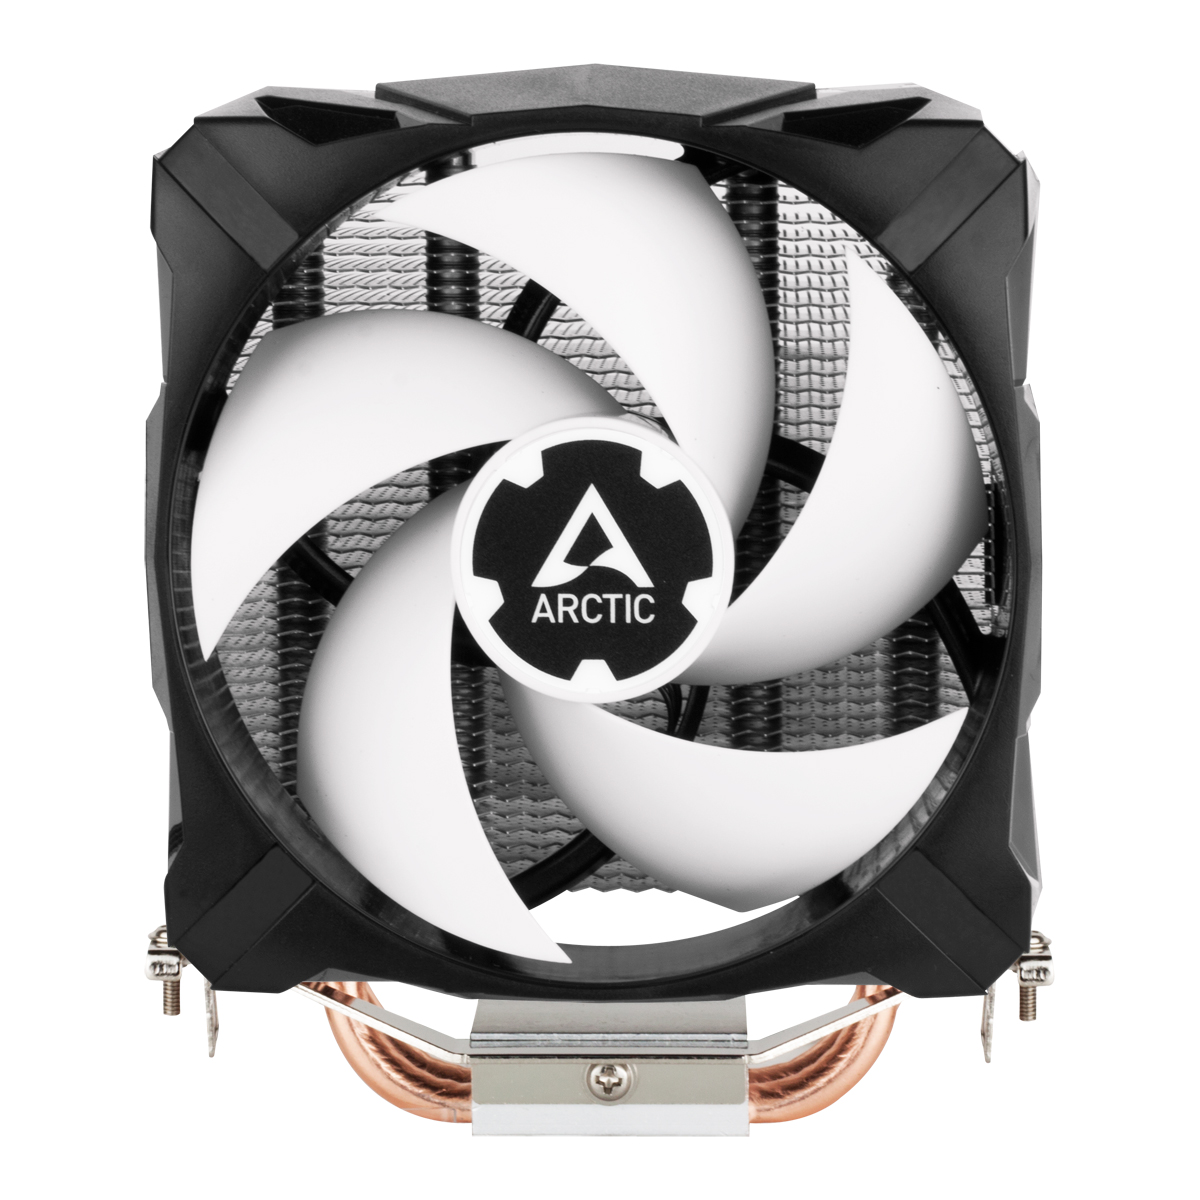 Arctic Freezer 7 X CPU-Kühler für Intel und AMD Prozessoren mit 100 mm Lüfter